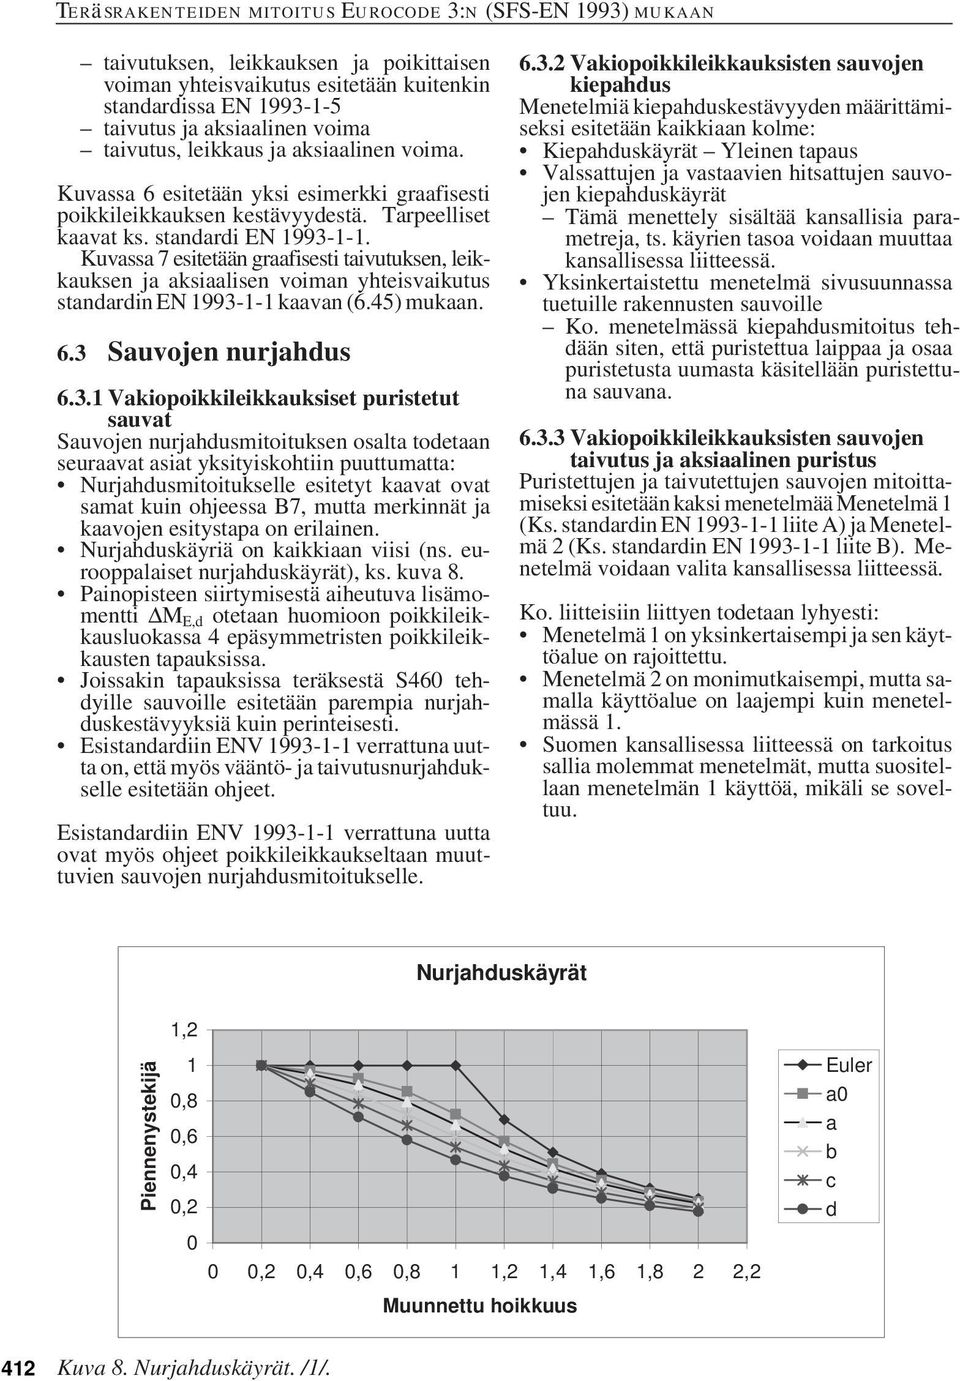 Kuvassa 7 esitetään graafisesti taivutuksen, leikkauksen ja aksiaalisen voiman yhteisvaikutus standardin EN 1993-